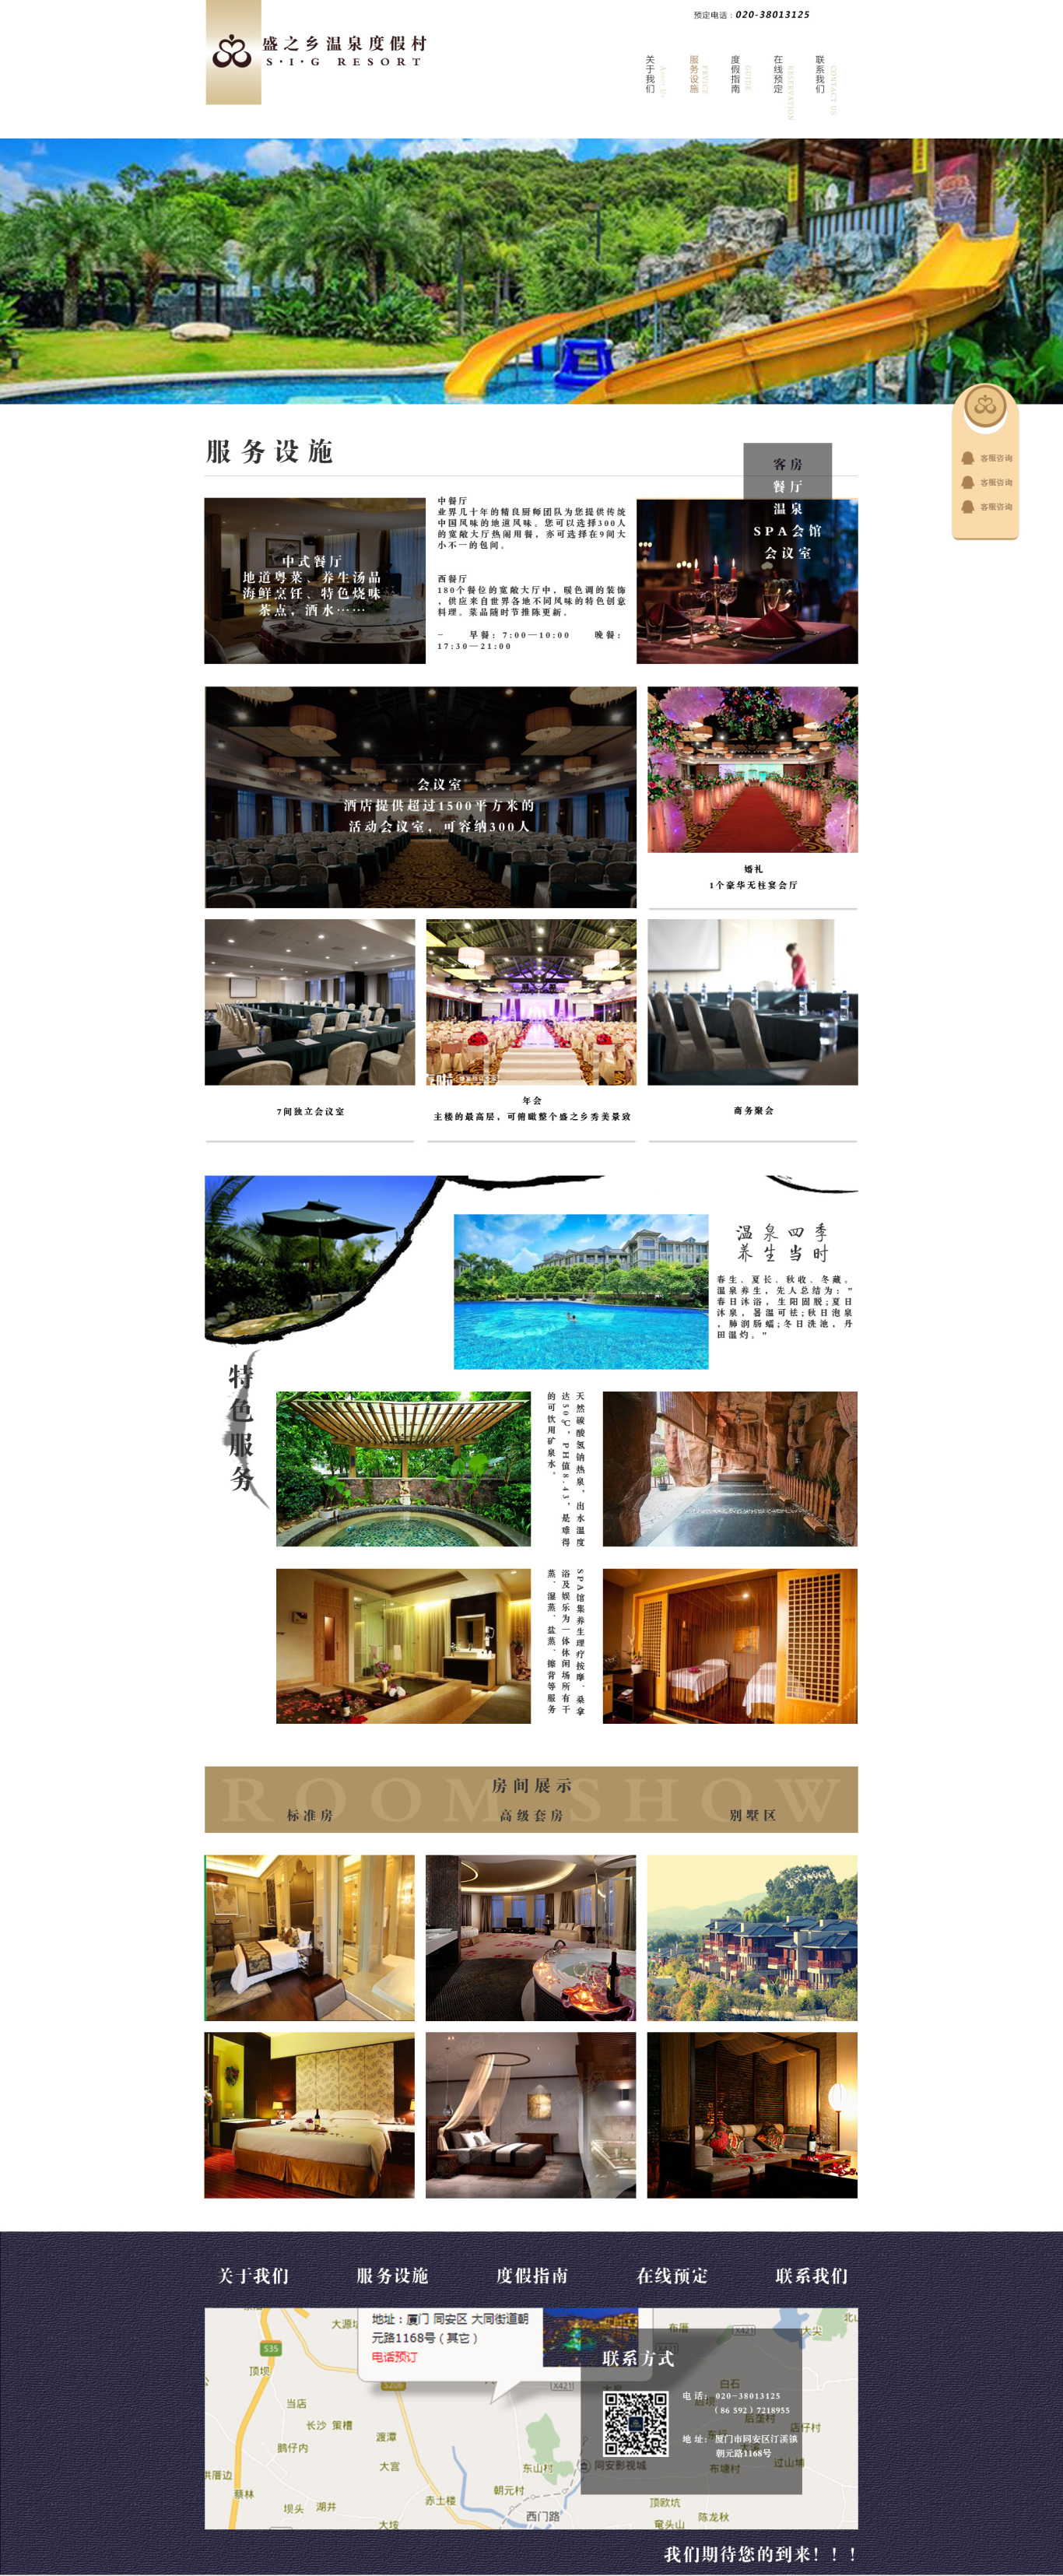 温泉度假酒店网页设计图0